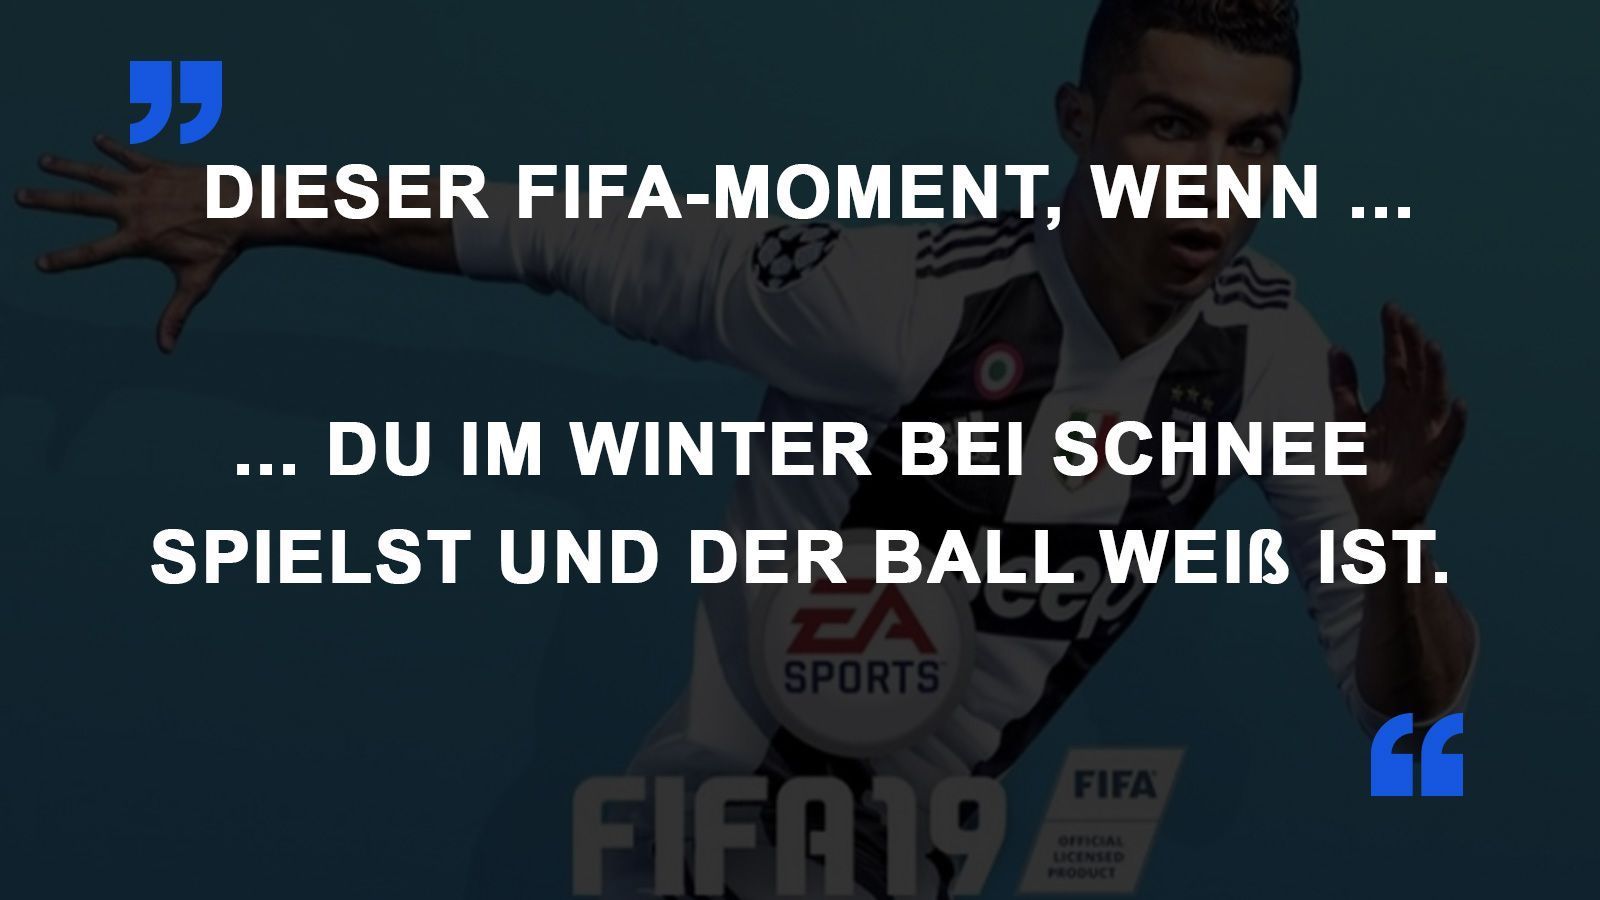 
                <strong>FIFA Momente Schnee</strong><br>
                
              